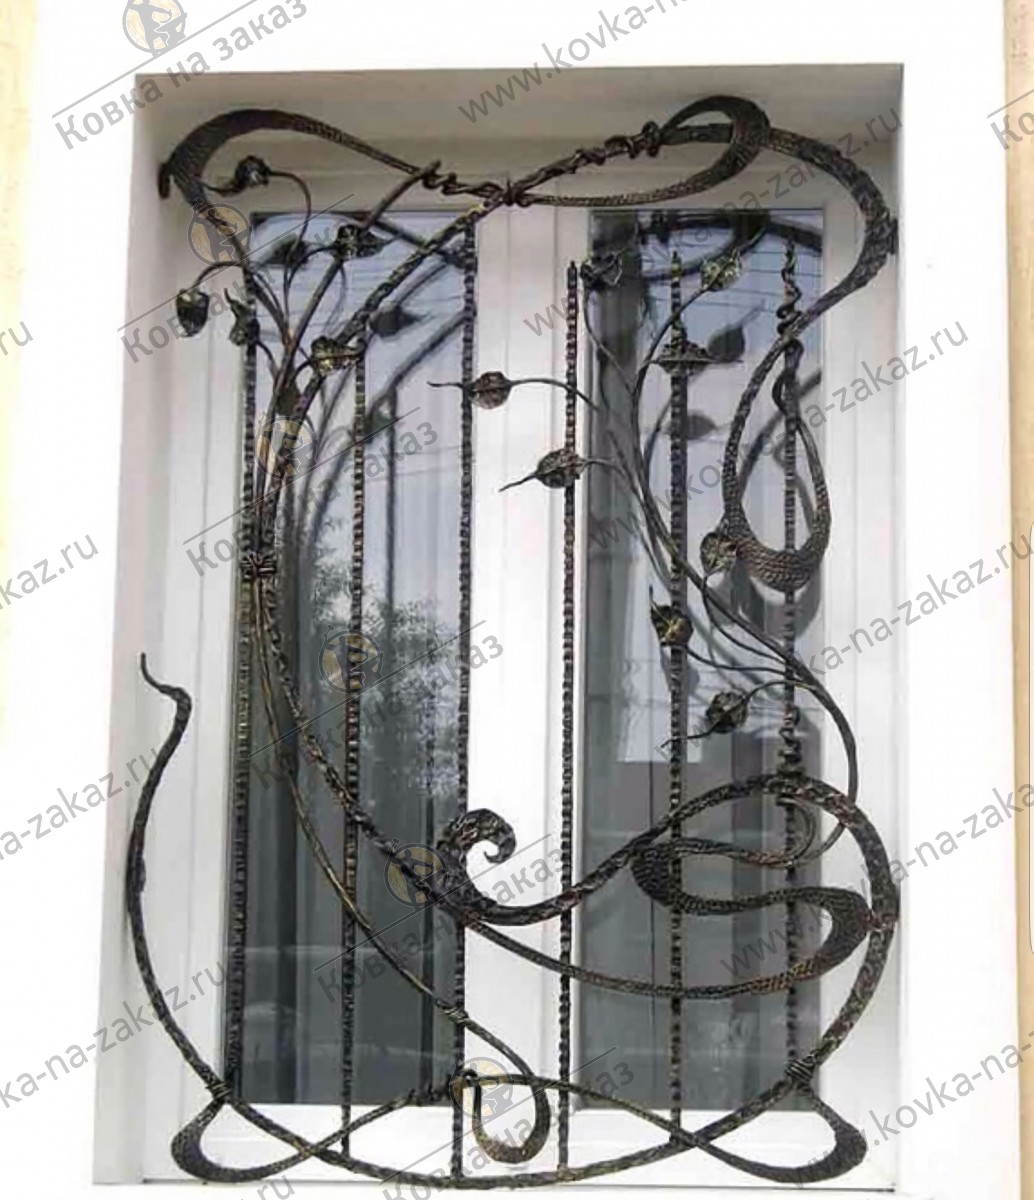 Фигурная кованая решетка в&nbsp;окно ручной работы из&nbsp;полосы с&nbsp;декоративной чеканкой и&nbsp;коваными листьями, фото 2